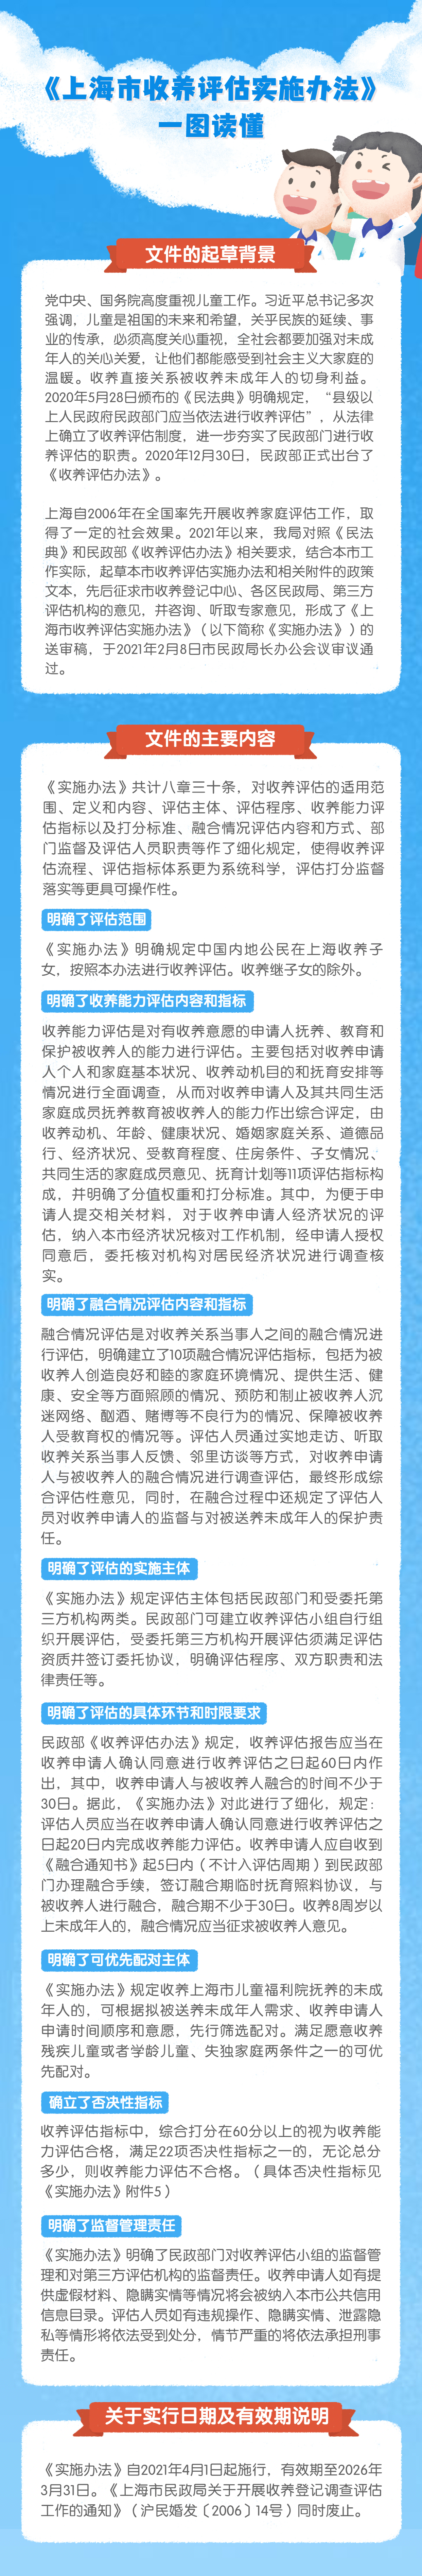 一图读懂《上海市收养评估实施办法》.jpg